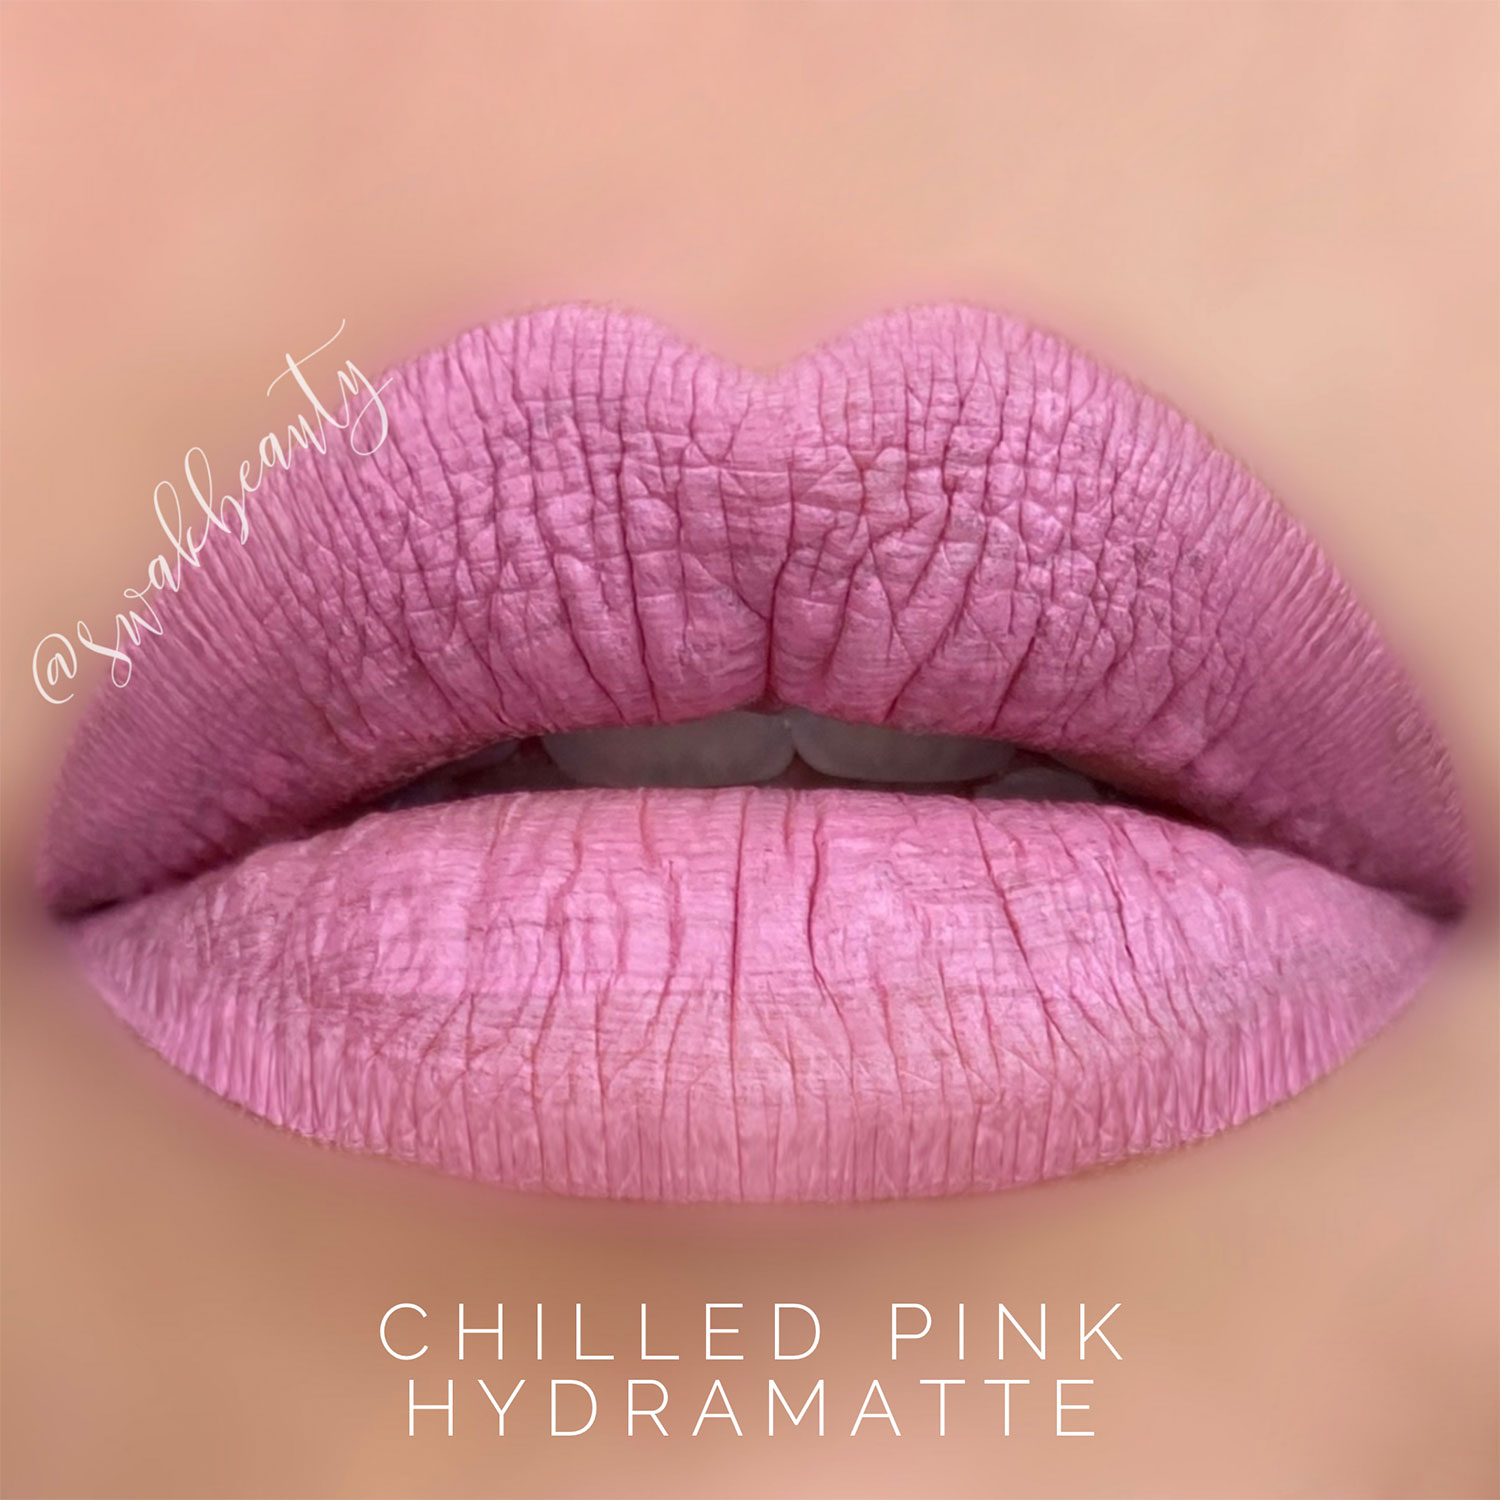 Chilled-Pink-HydraMatte-lips